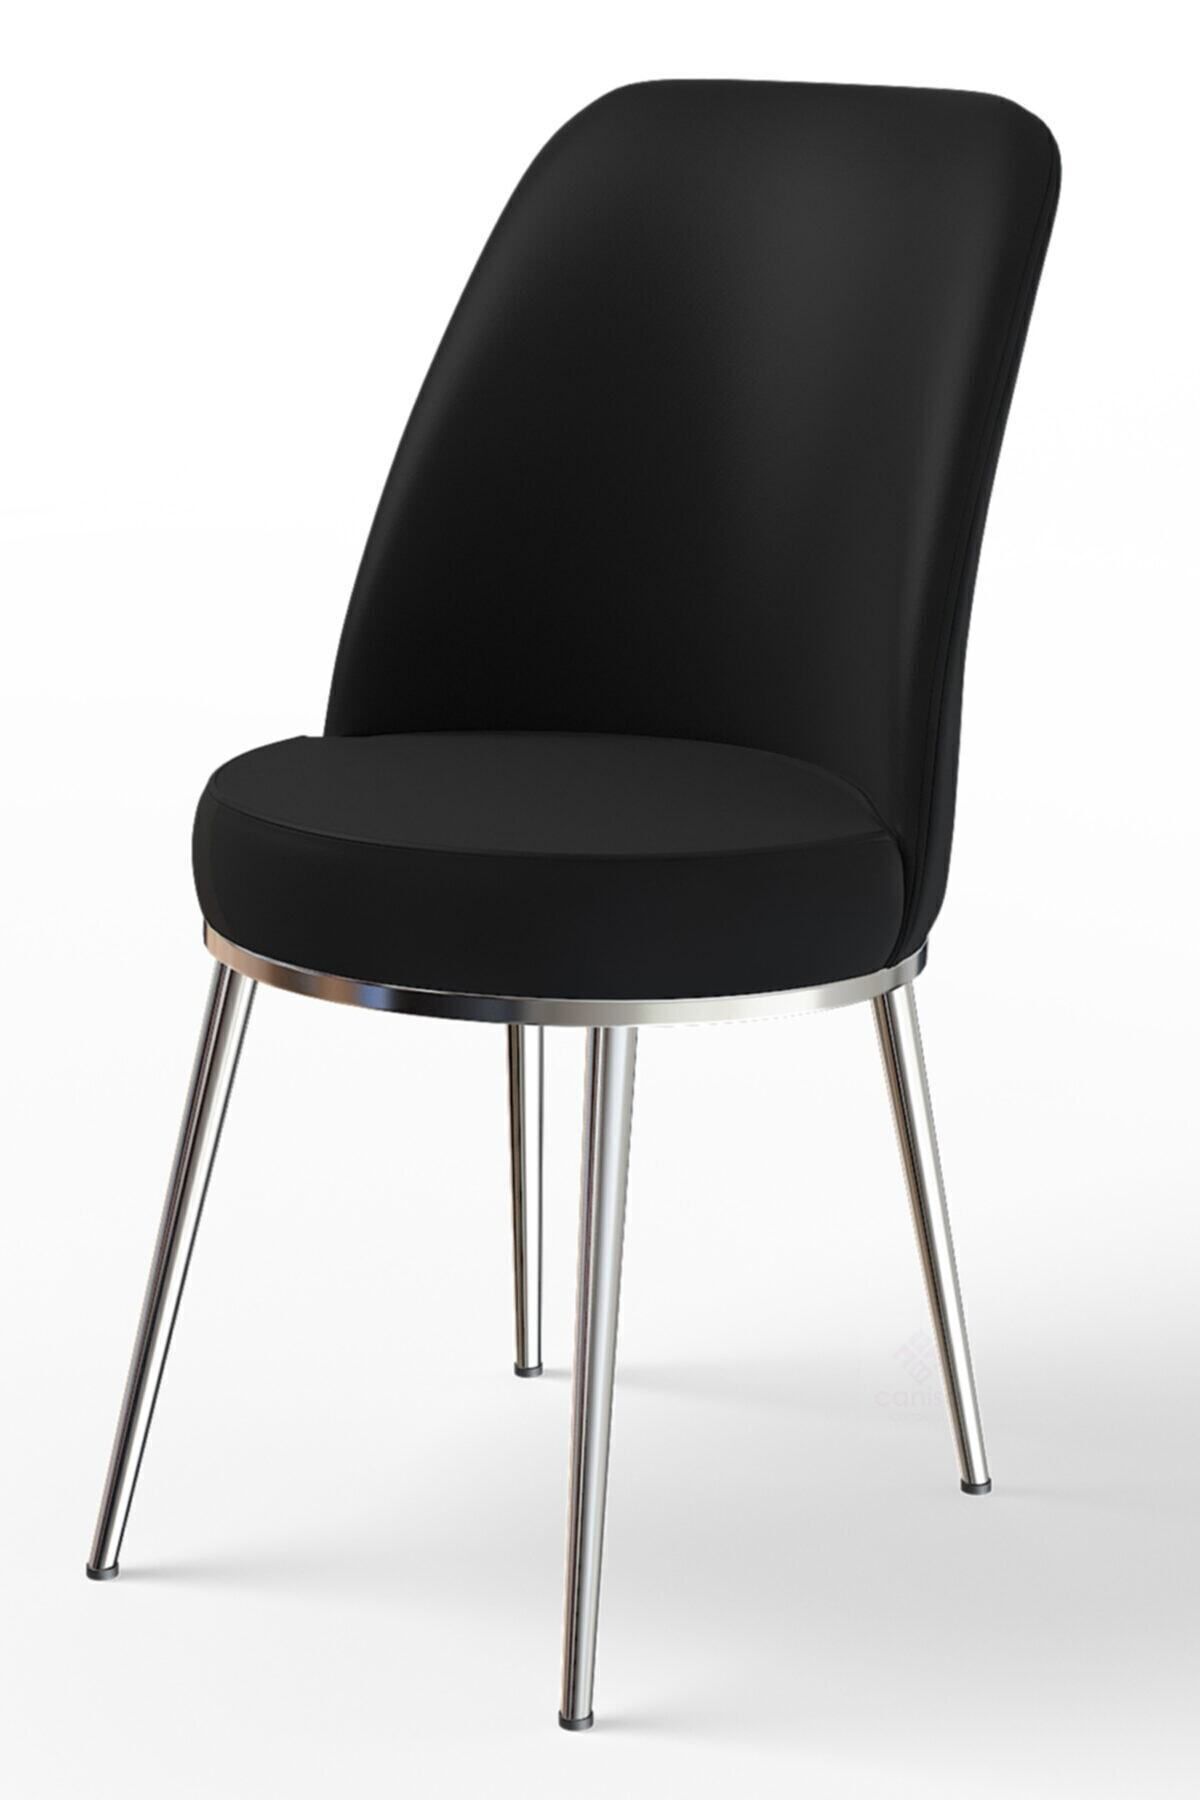 Canisa Concept Dexa Serisi Siyah Renk Sandalye Mutfak Sandalyesi, Yemek Sandalyesi Ayaklar Parlak Krom